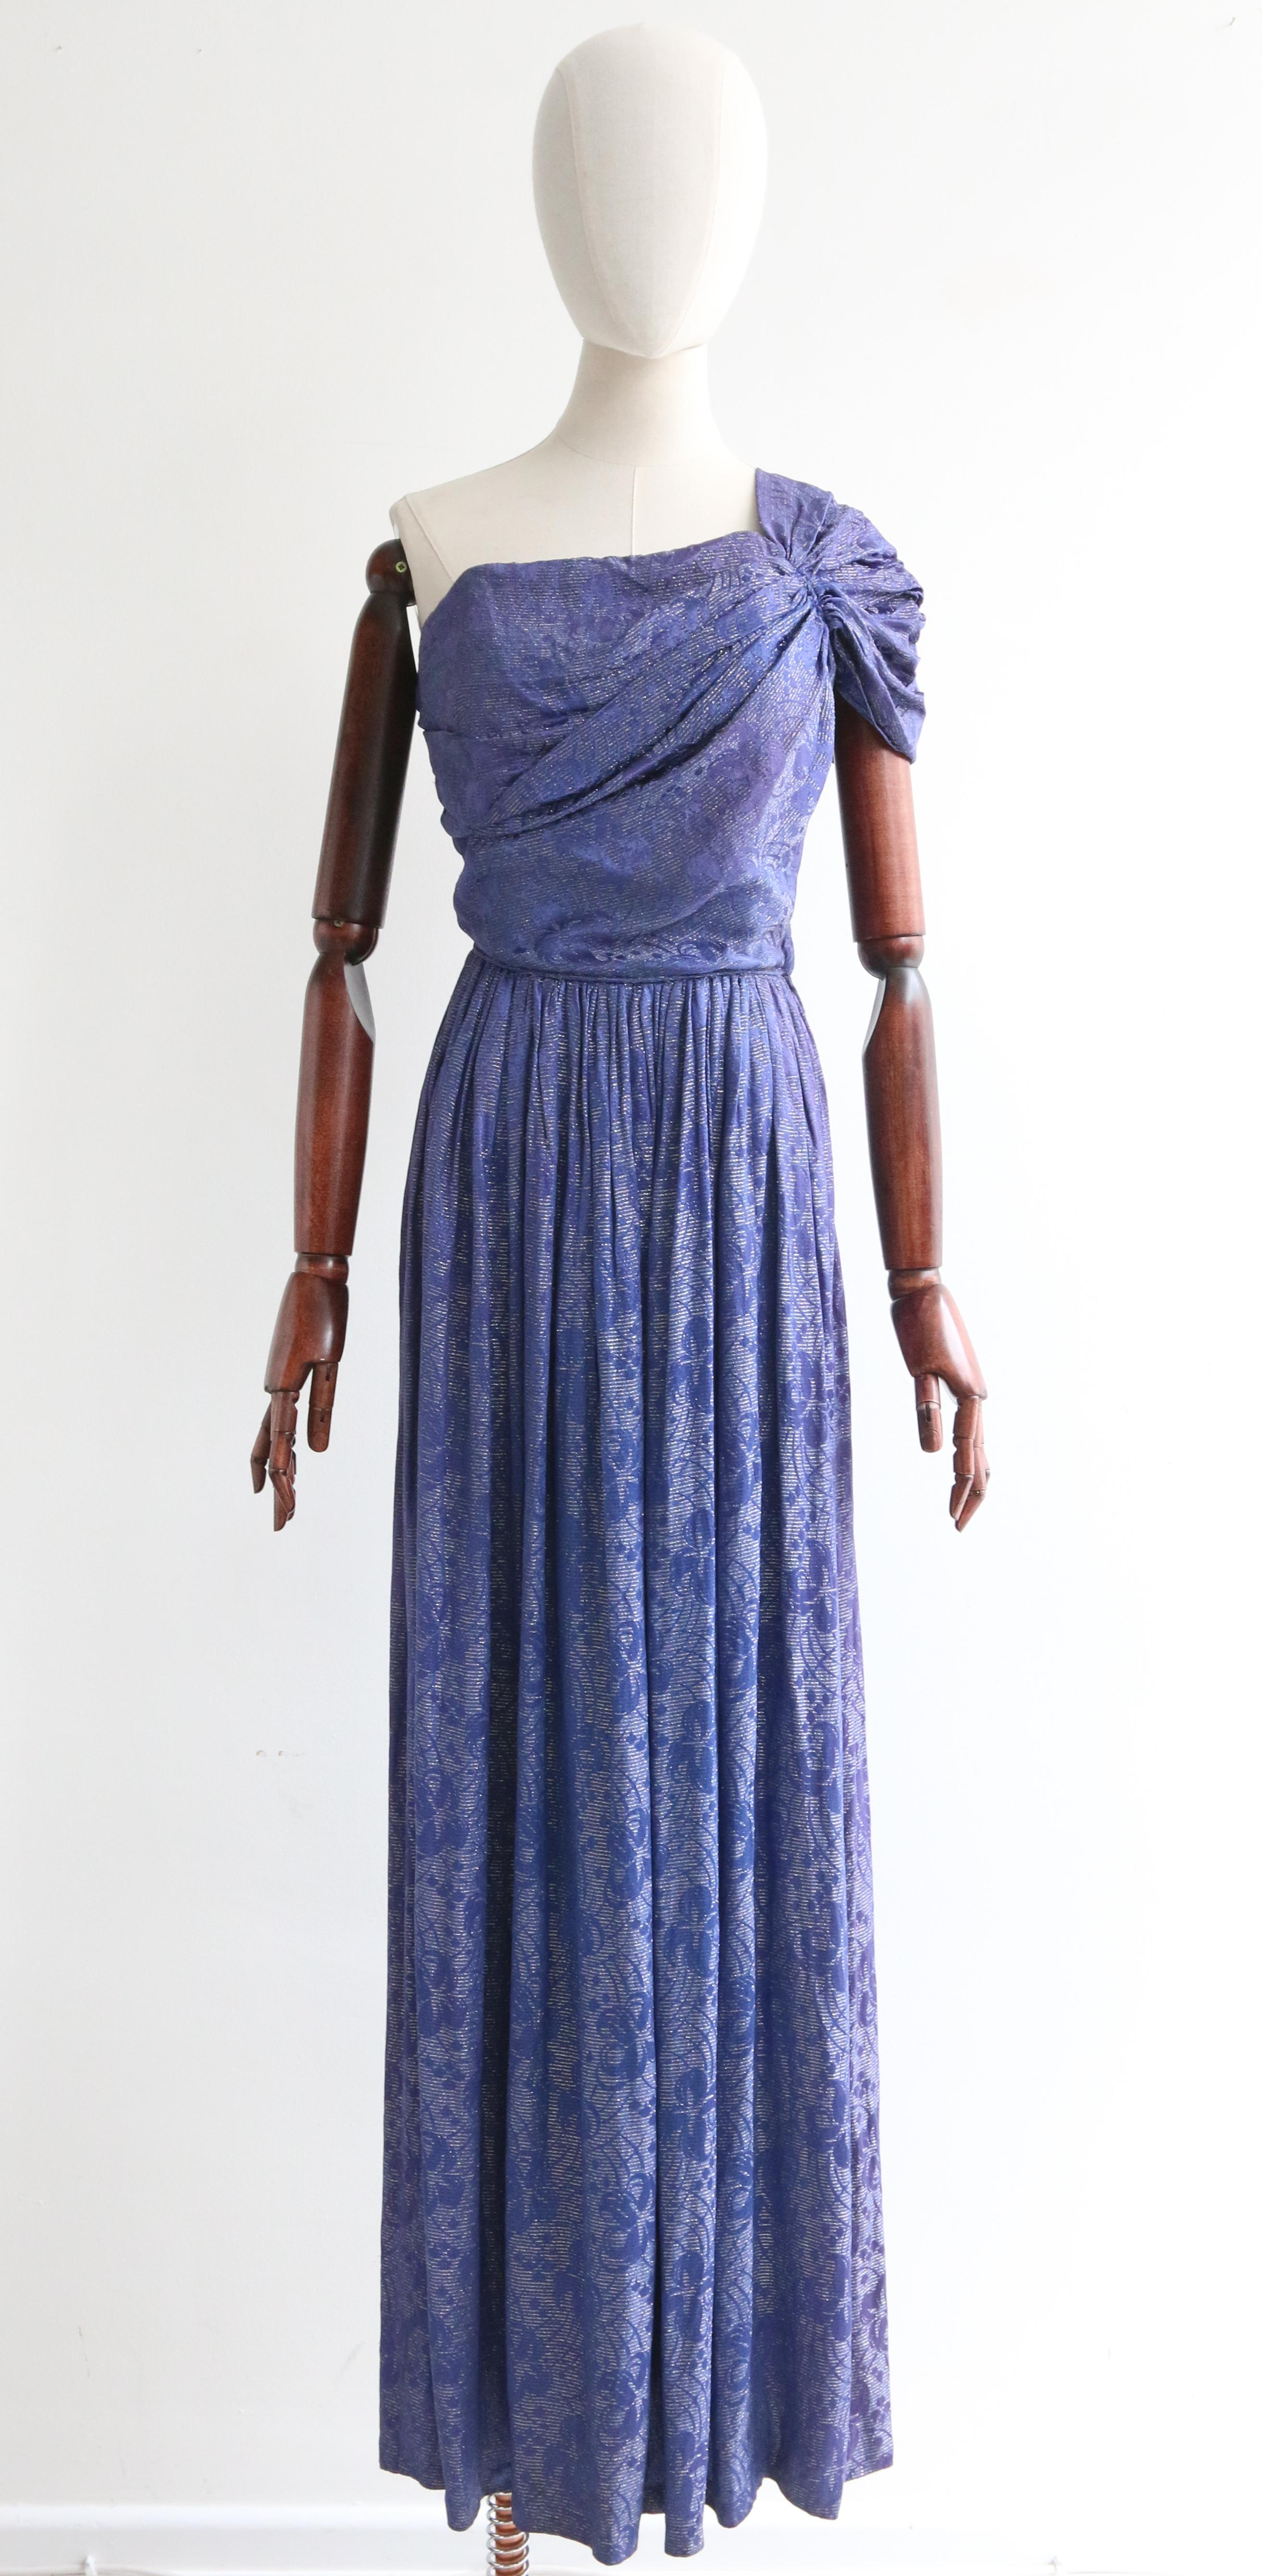 Cette fascinante robe en brocart de soie bleu nuit des années 1930, avec un accent en fil lamé argenté, est une pièce rare à voir

L'encolure droite de la robe est mise en valeur par une magnifique bretelle unique, élégamment plissée et froncée, qui